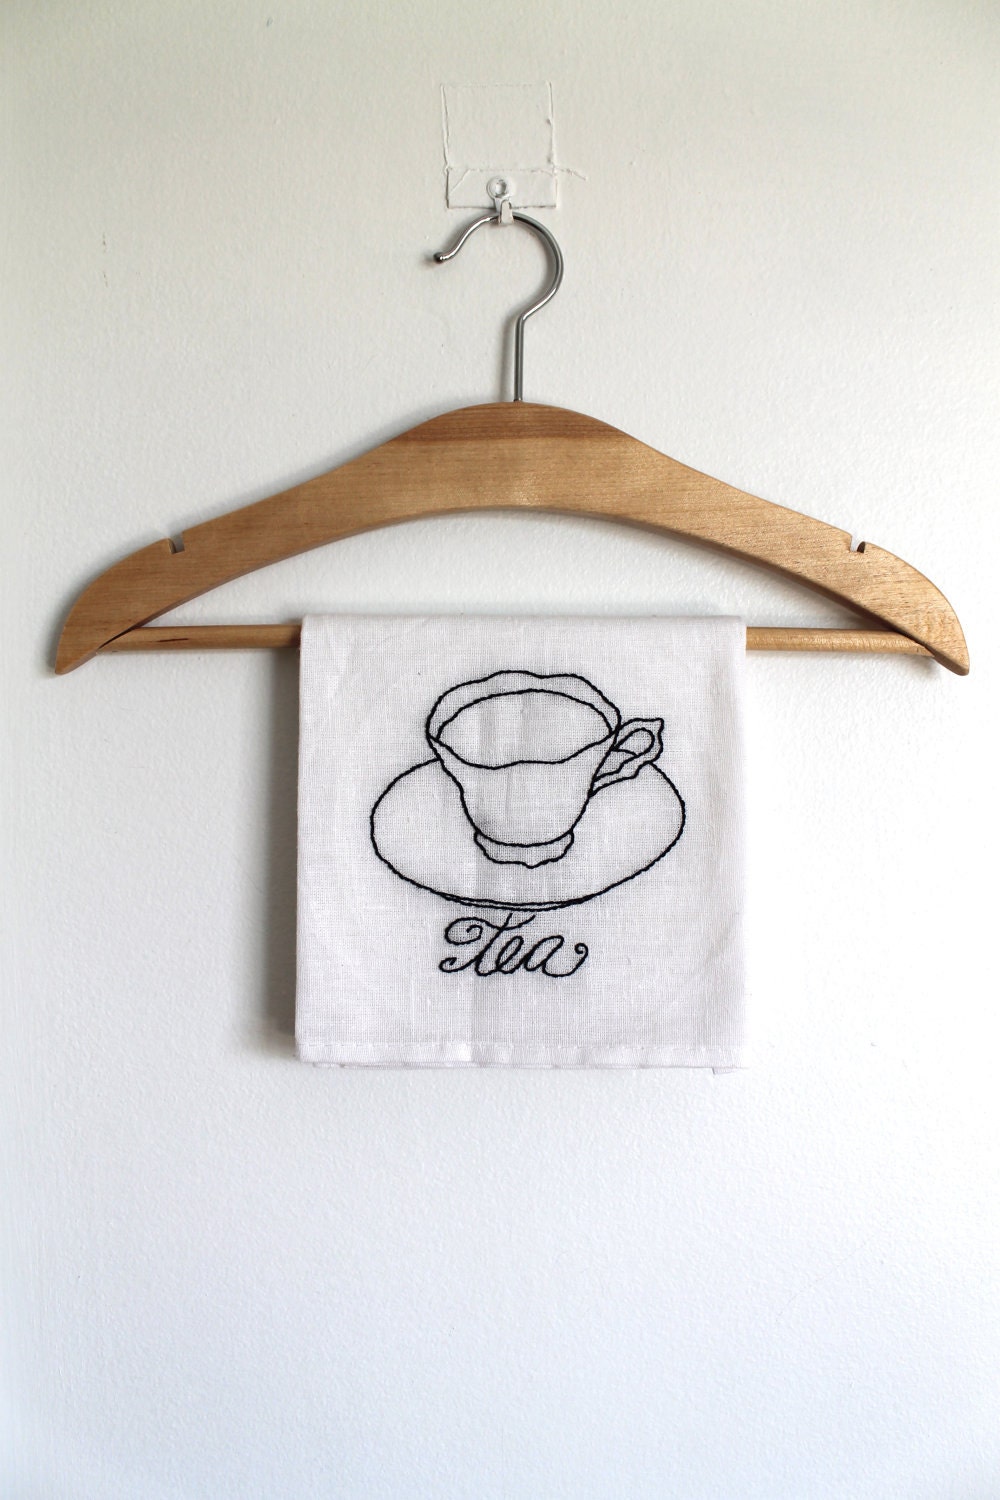 Кухня полотенце ручной вышивкой Оригинальный арт Tea Cup белой муки мешок Полотенце